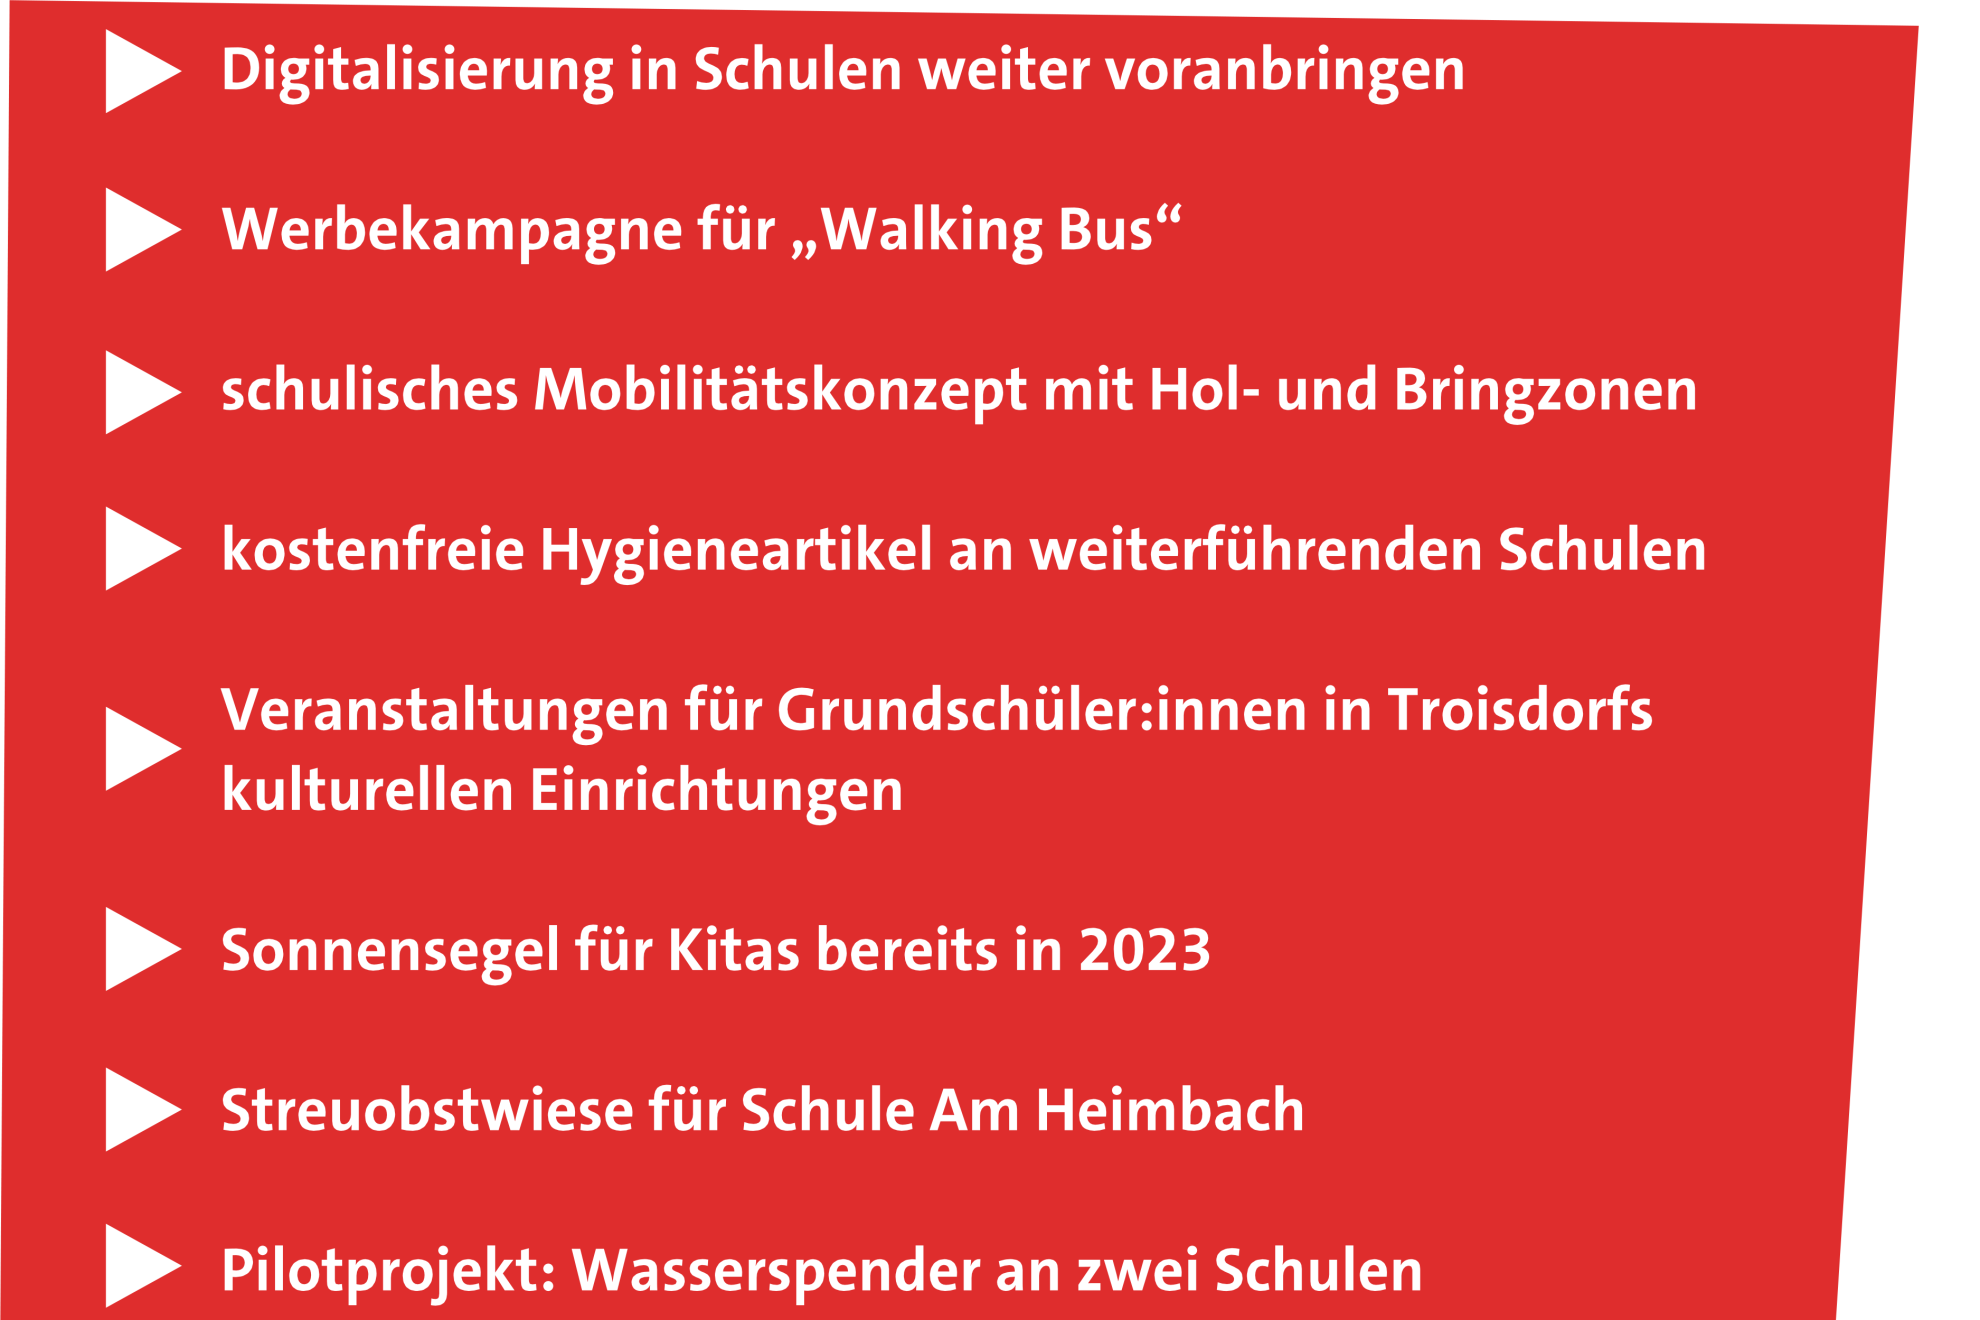 202301_Hp_Haushalt_Troisdorf_Stadt_2023_SPD_Fraktion_Schulen_MEP_Digitalisierung